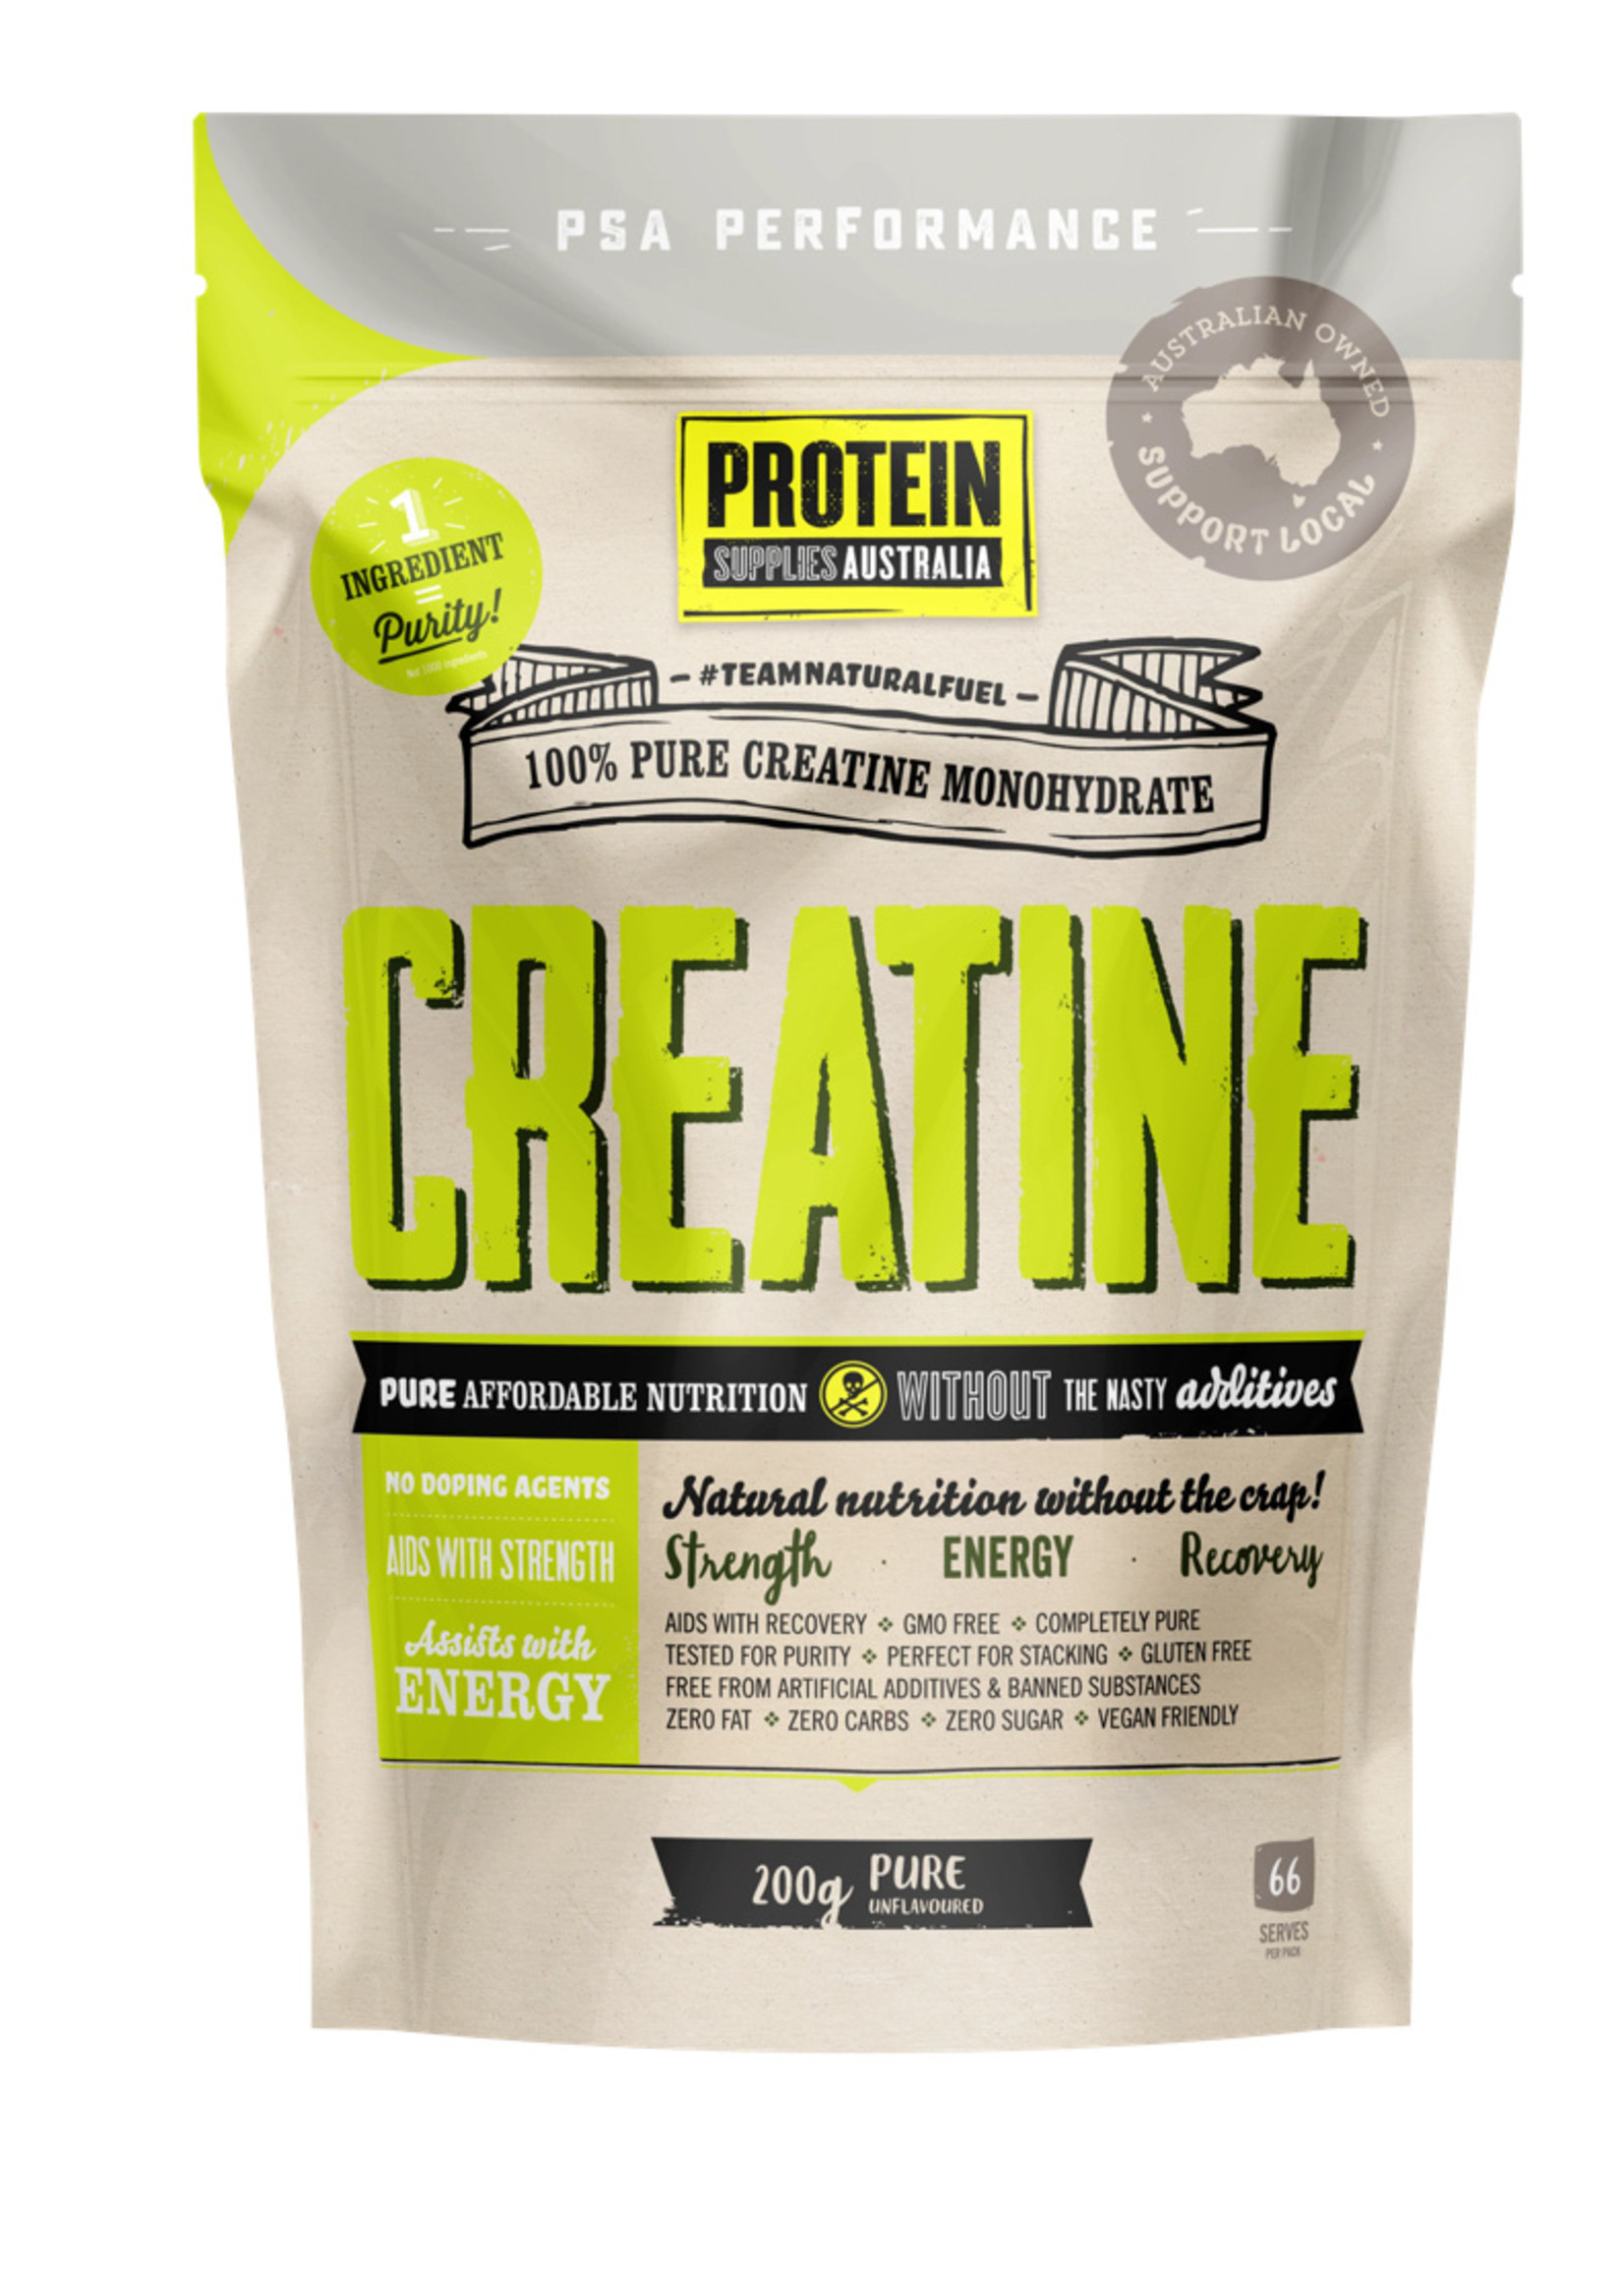 Protein Supplies Australia Protein Supplies Australia Creatine Pure 200g